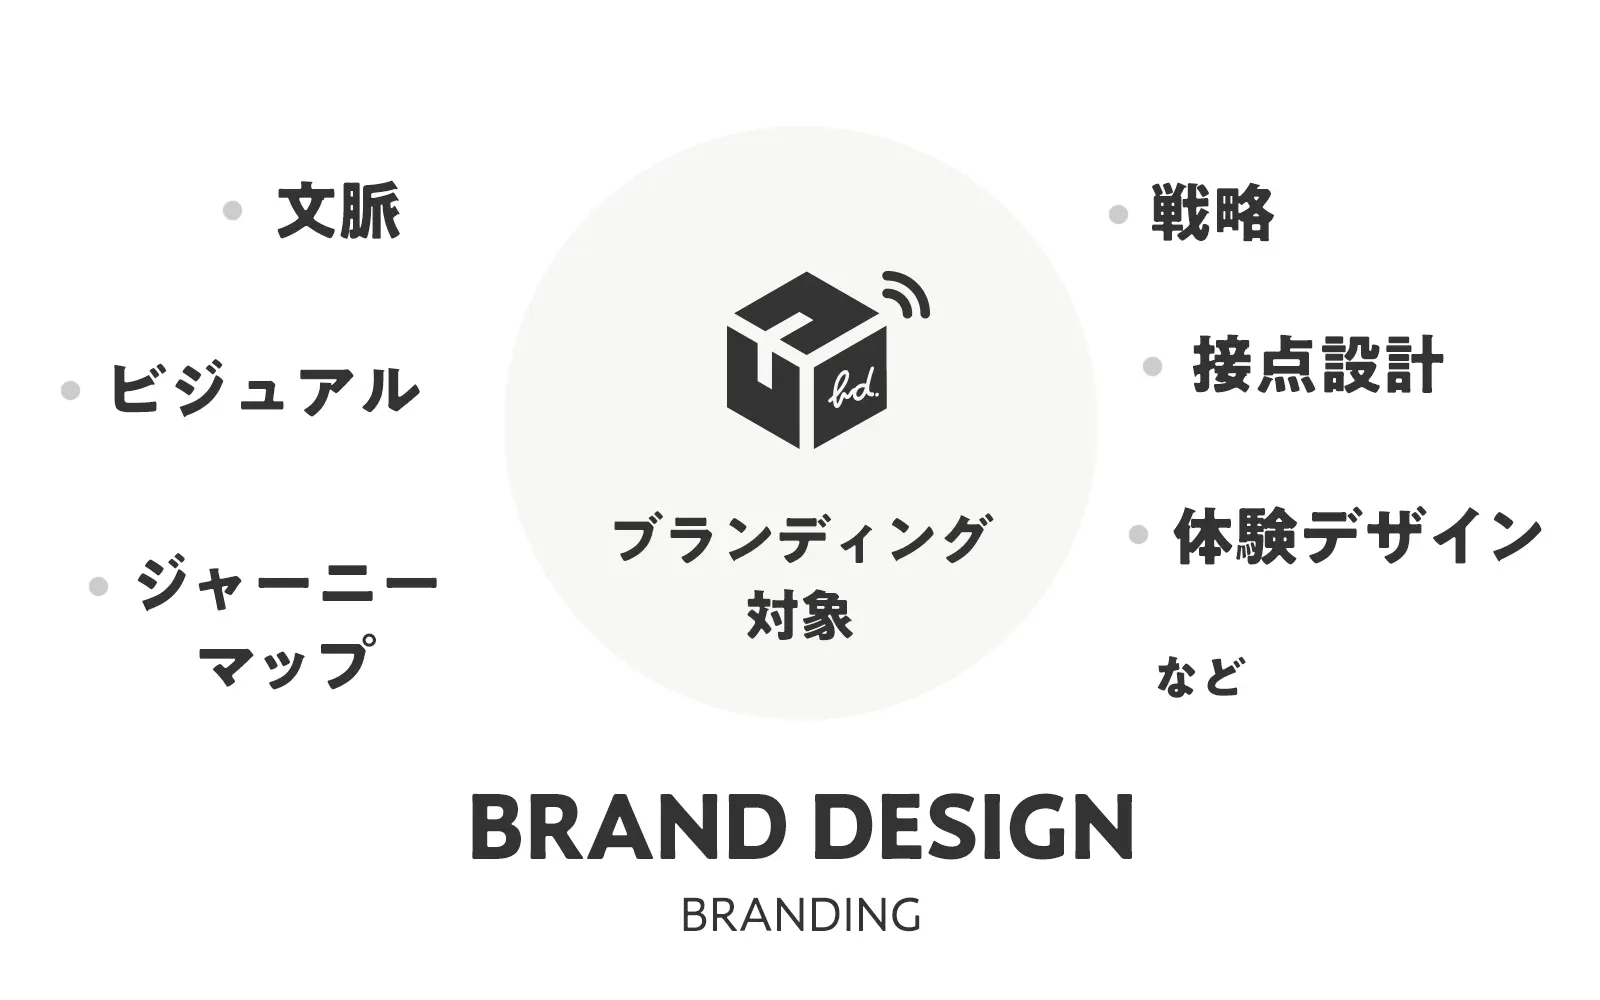 ブランドデザインとはブランディングに関する全てのデザイン！